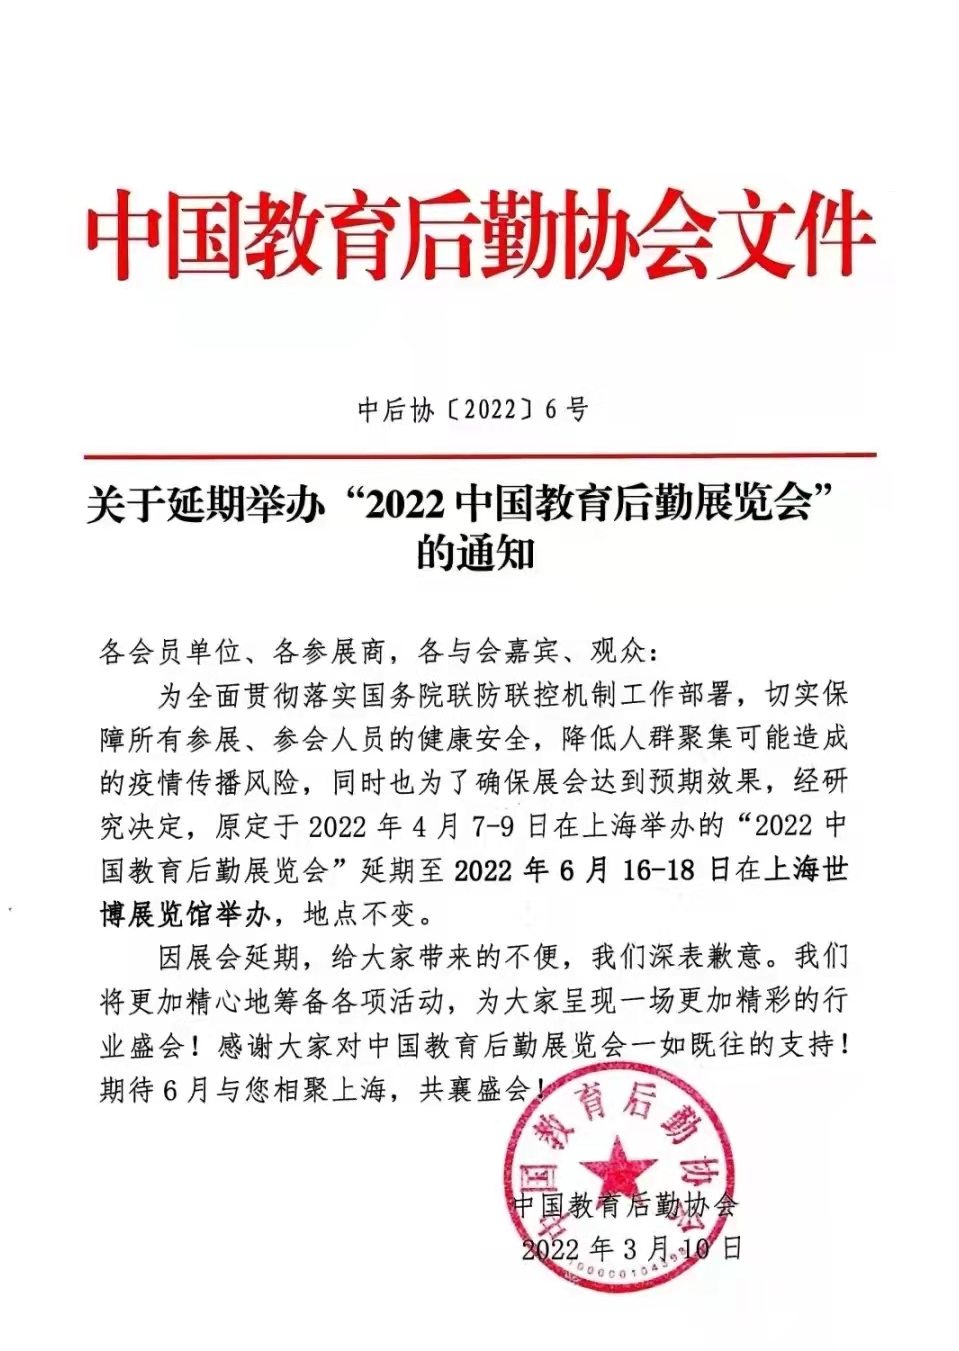 关于延期举办“2022中国教育后勤展览会”的通知